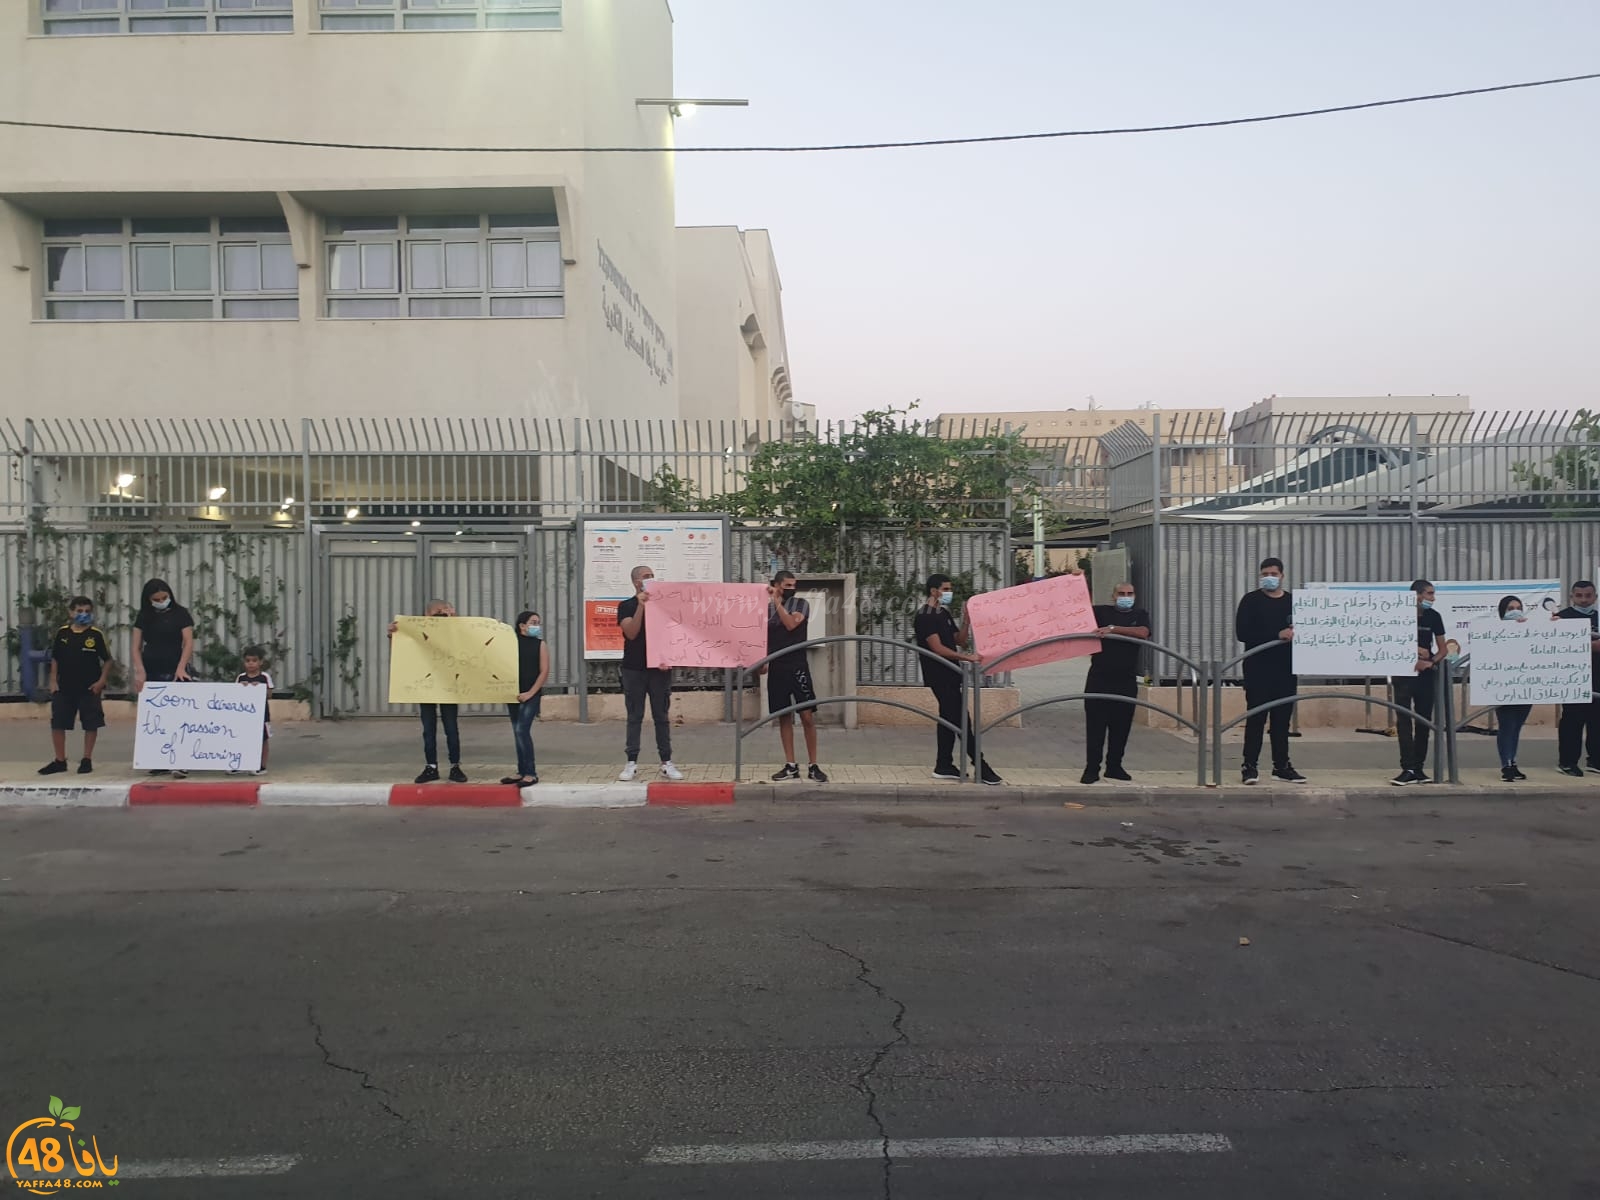 فيديو: طلاب مدرسة يافا المستقبل يطالبون بالعودة إلى مقاعدهم الدراسية